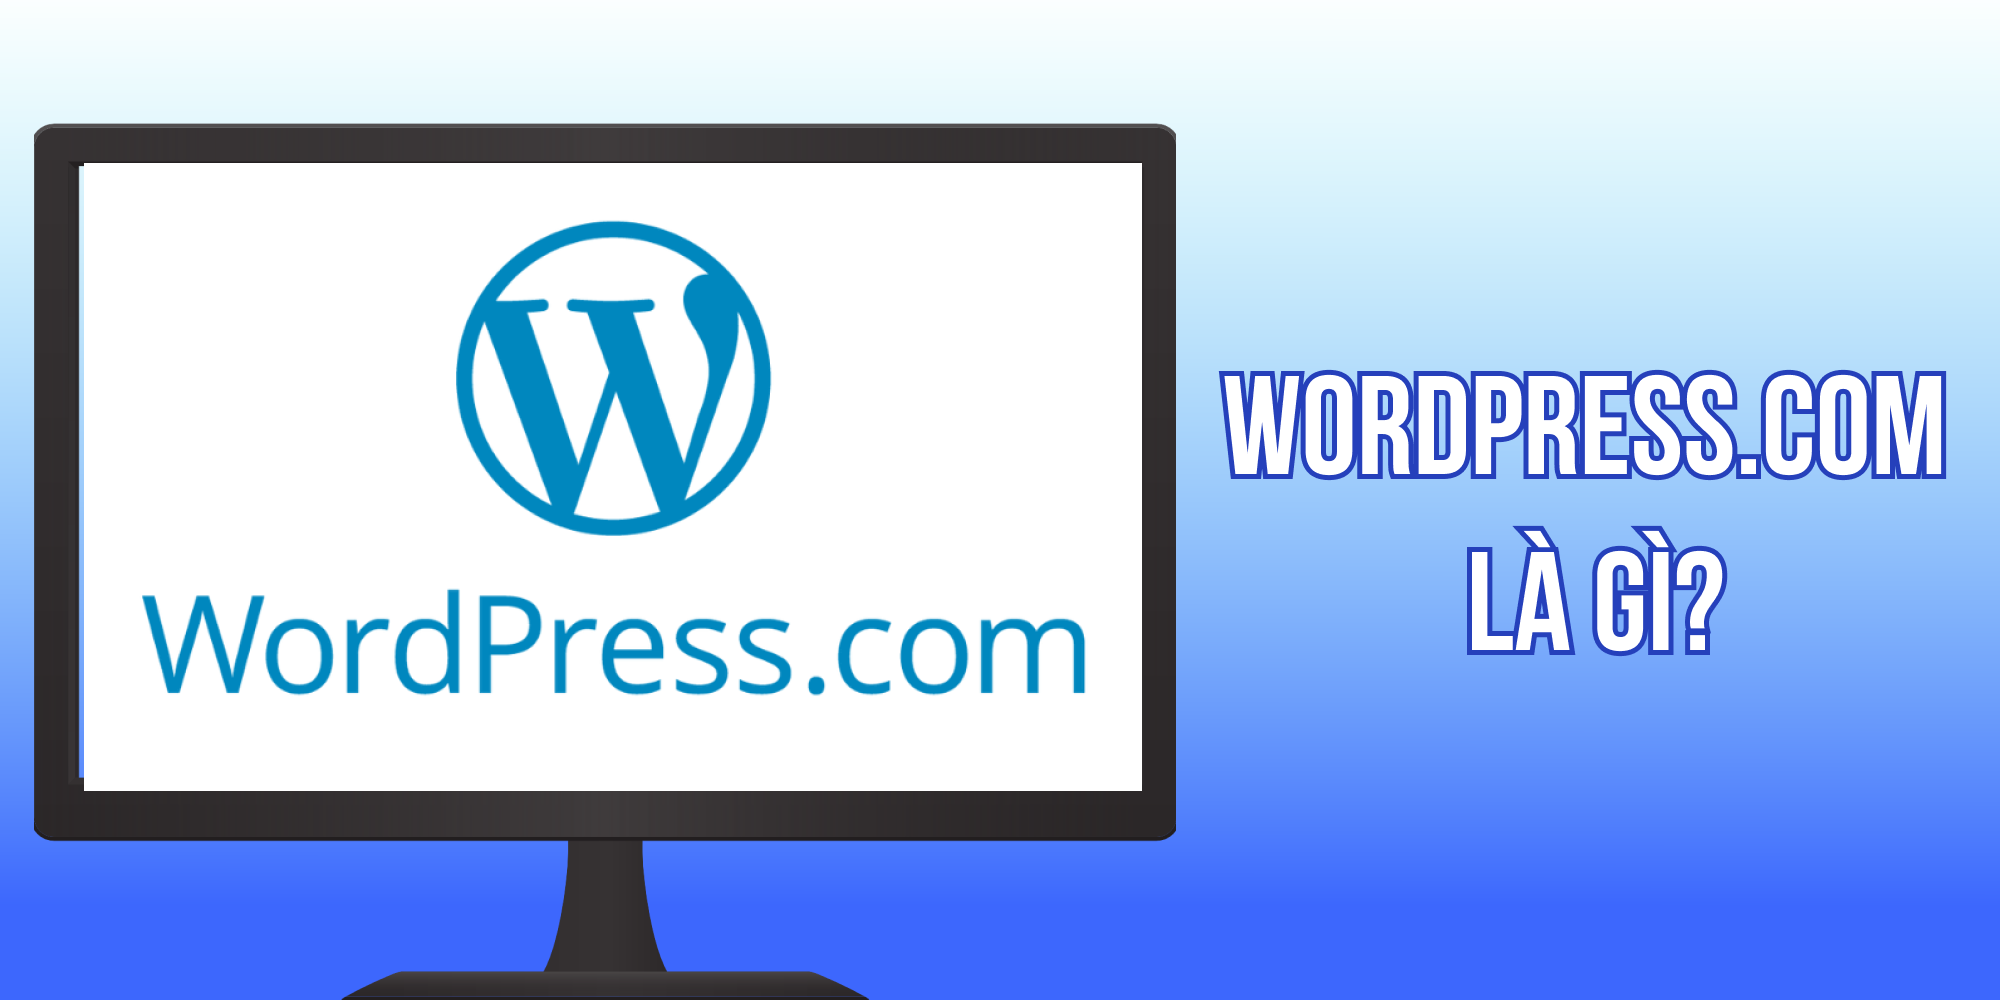 WordPress.com là gì?